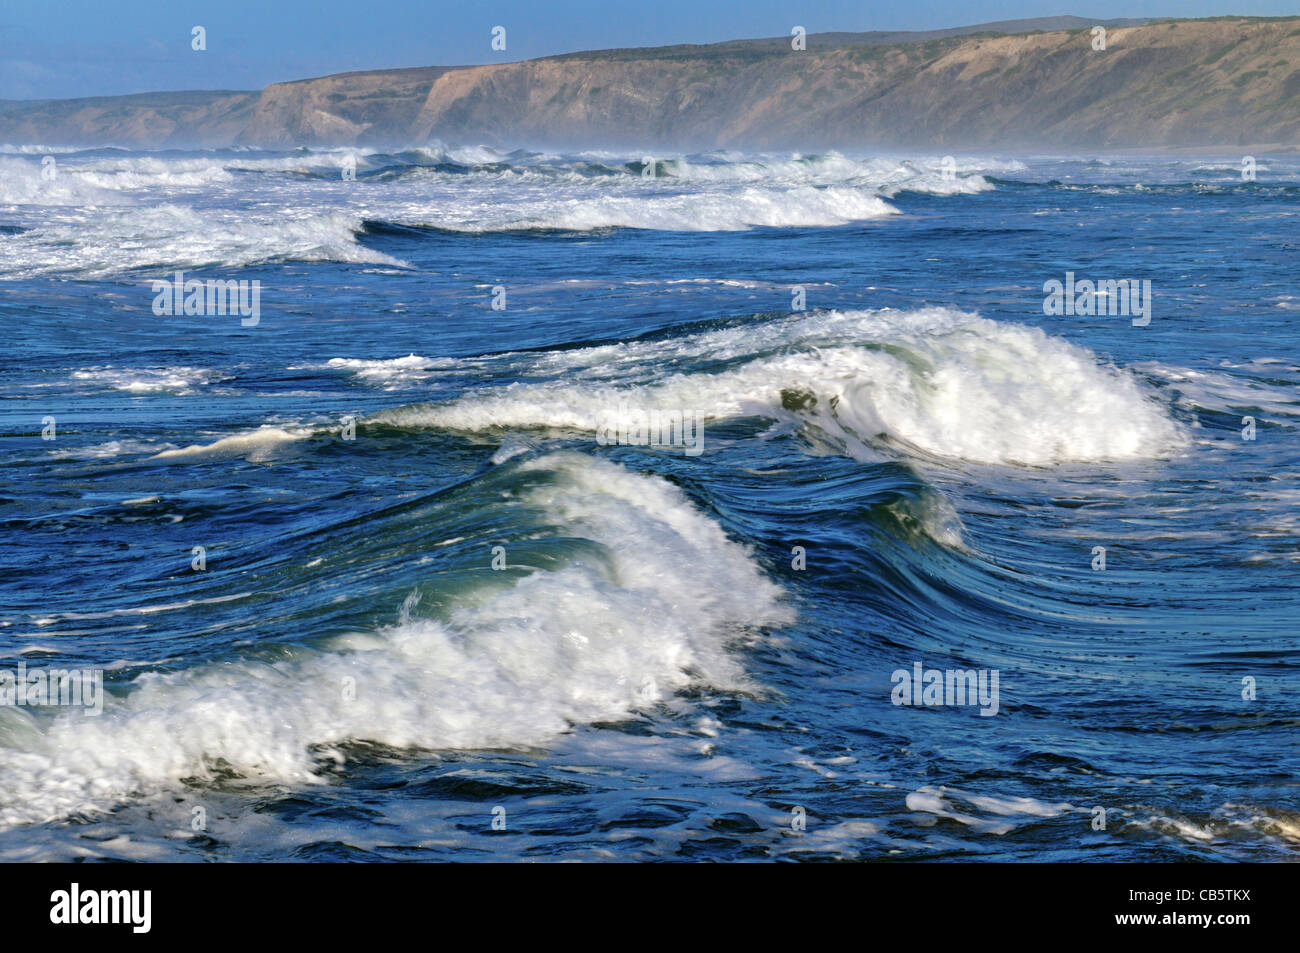 Portugal, Algarve: Las olas en la playa Praia da Bordeira Foto de stock